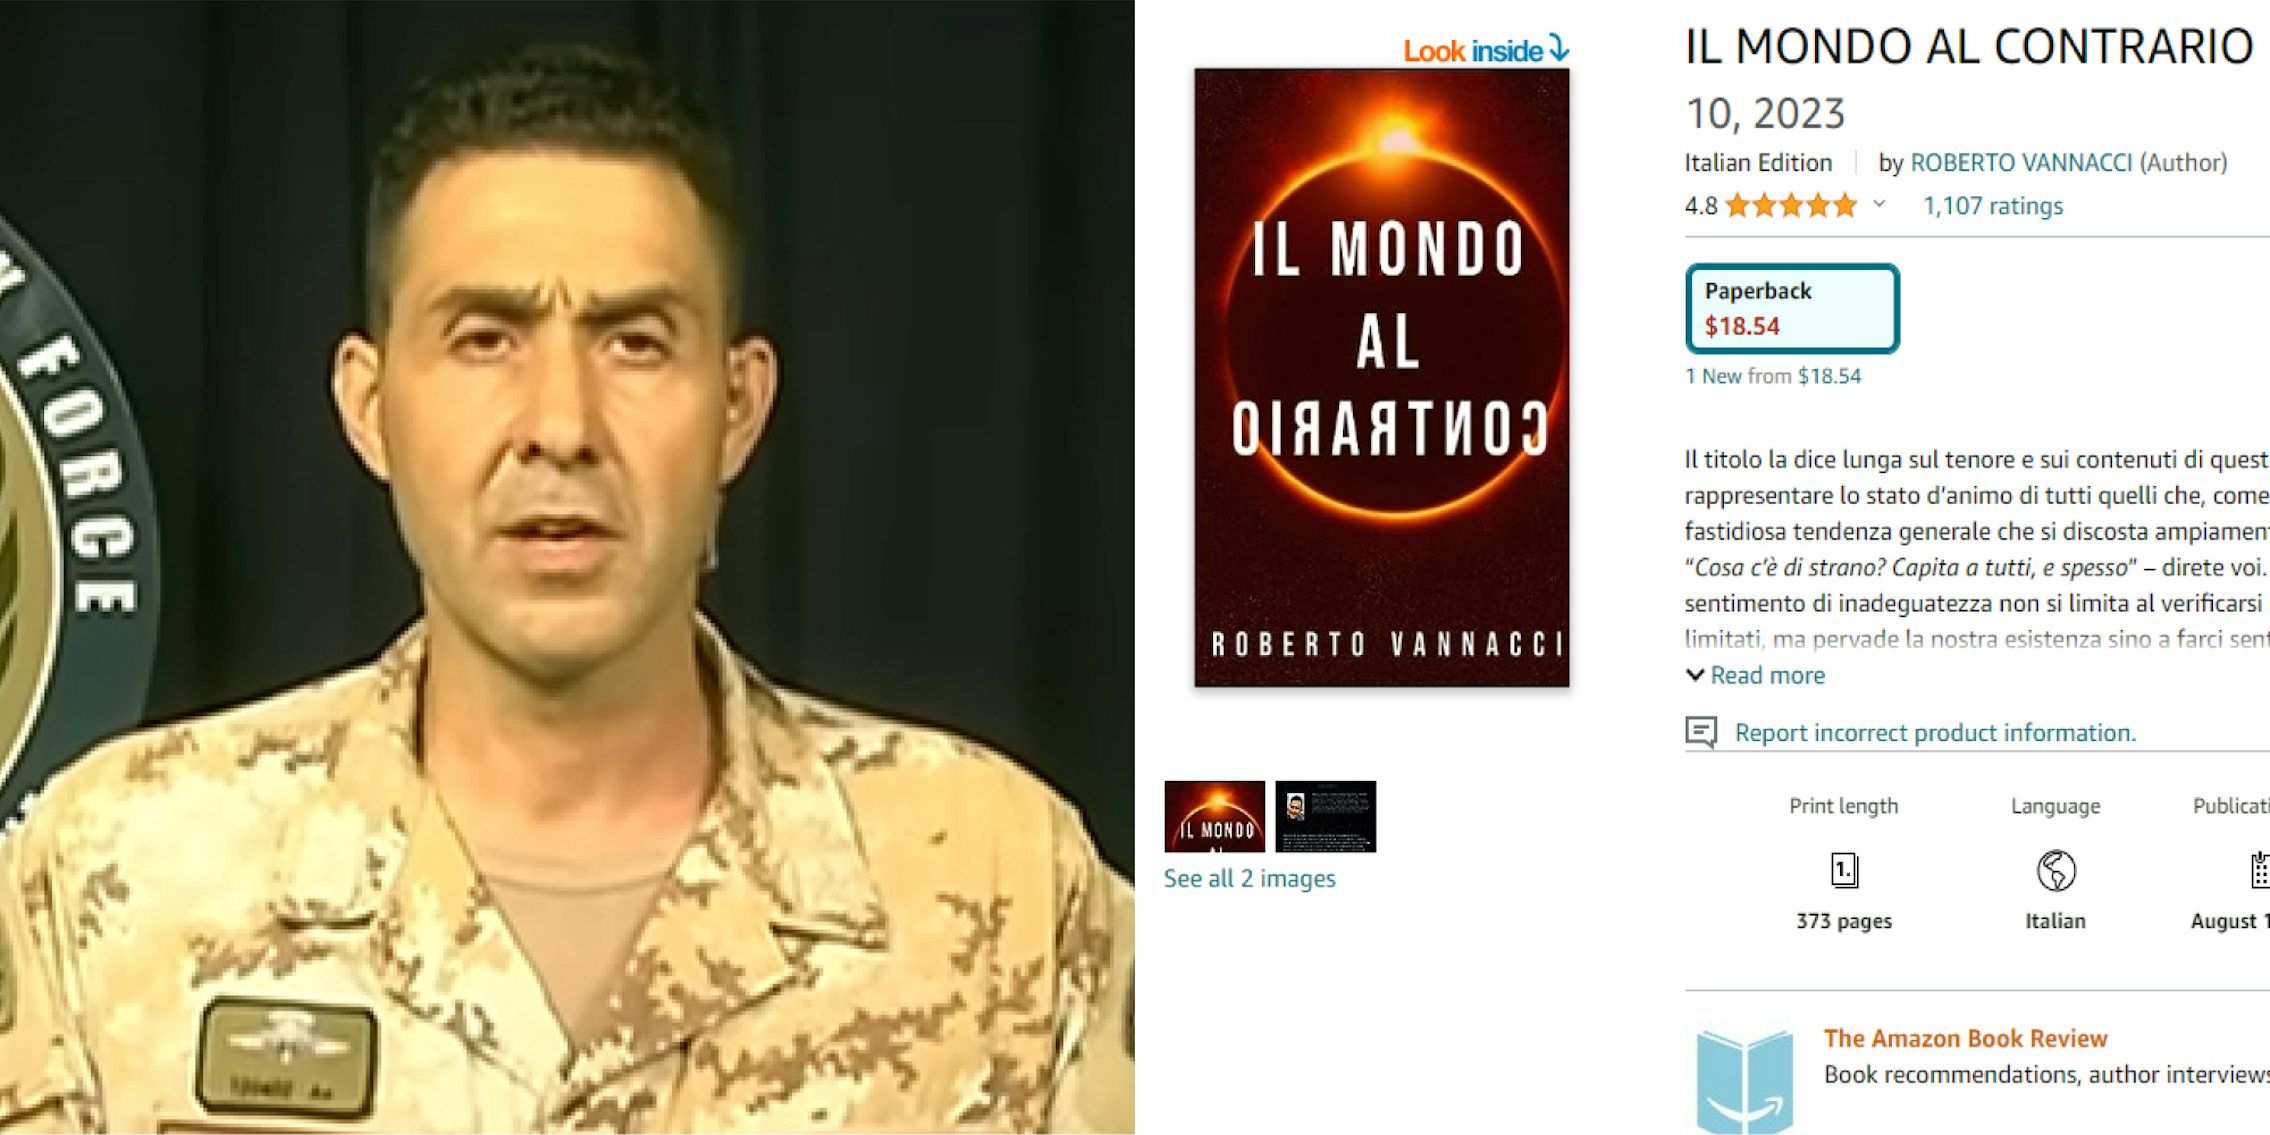 Roberto Vannacci speaking in front of grey curtain l) IL MONDO AL CONTRARIO book on Amazon (r)